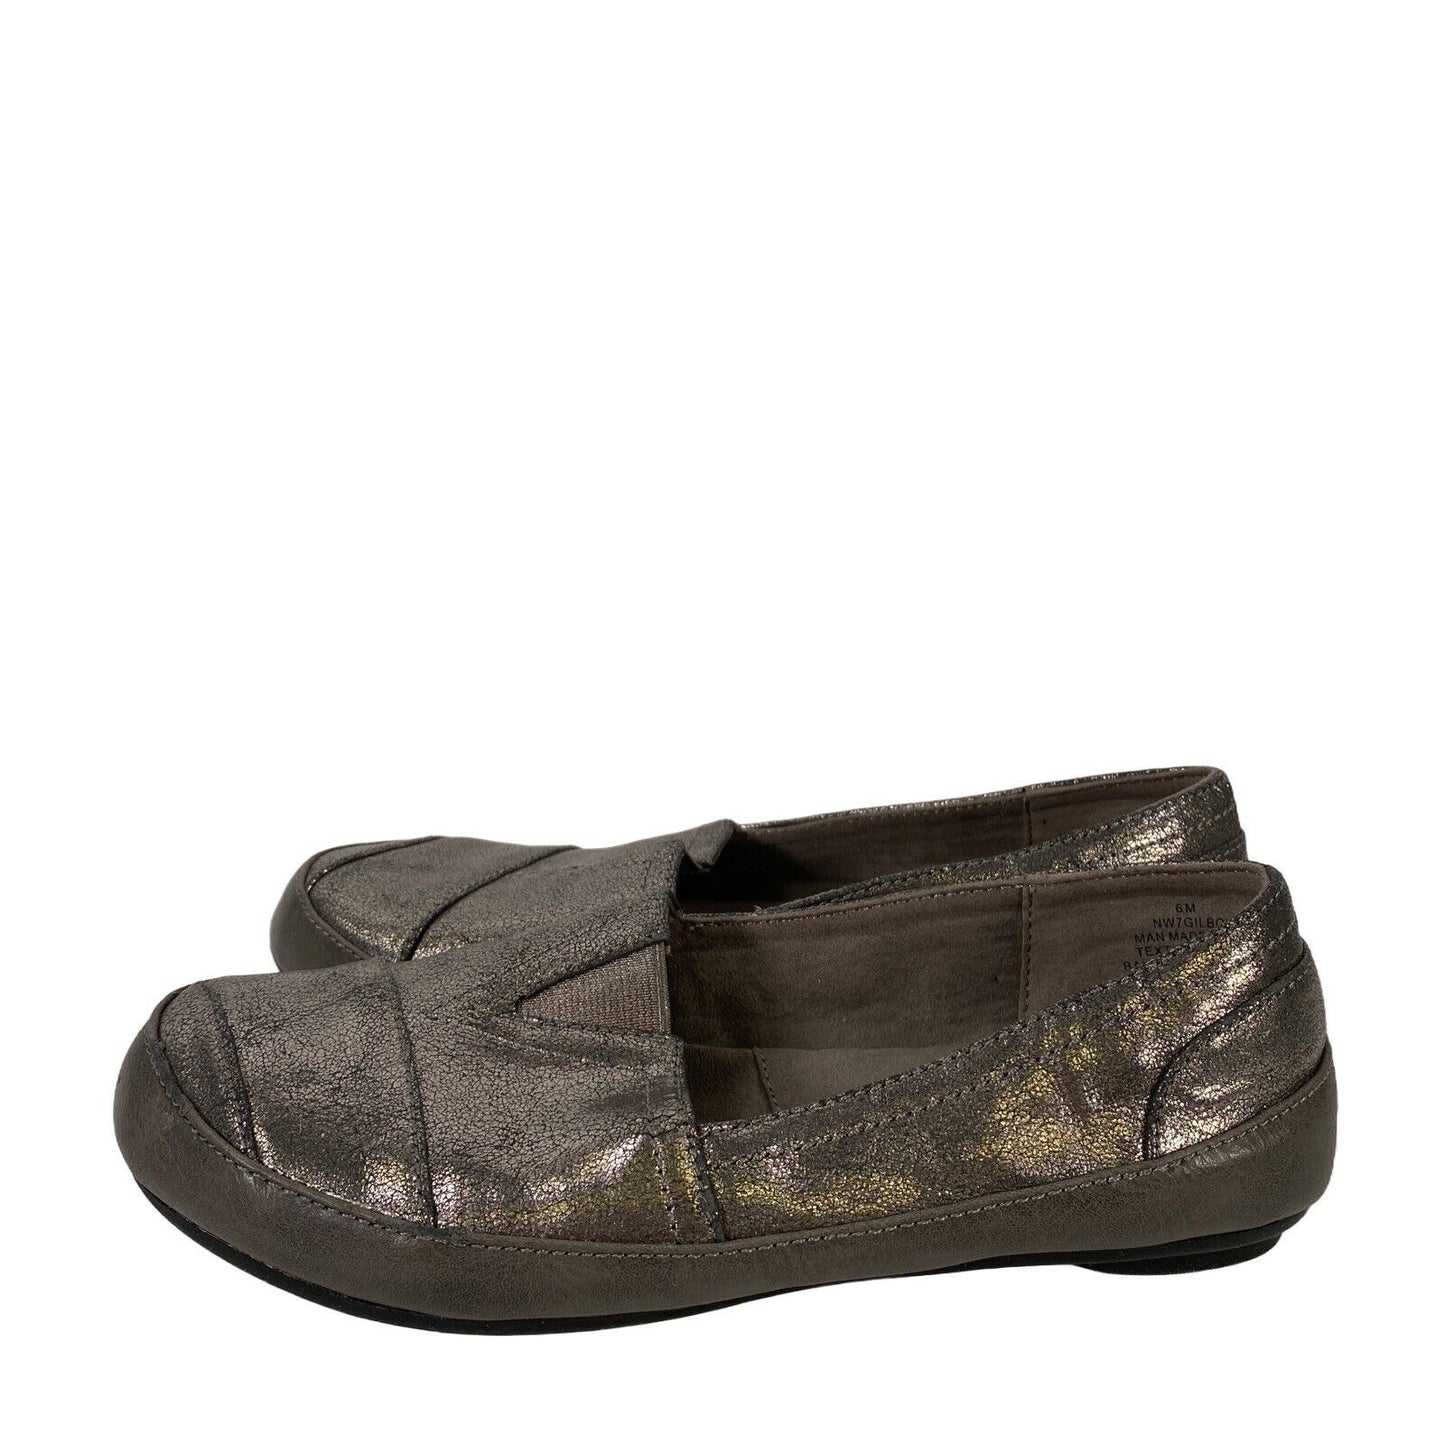 Zapatos planos Gilboy sin cordones para mujer de color gris metalizado de Nine West - 6M